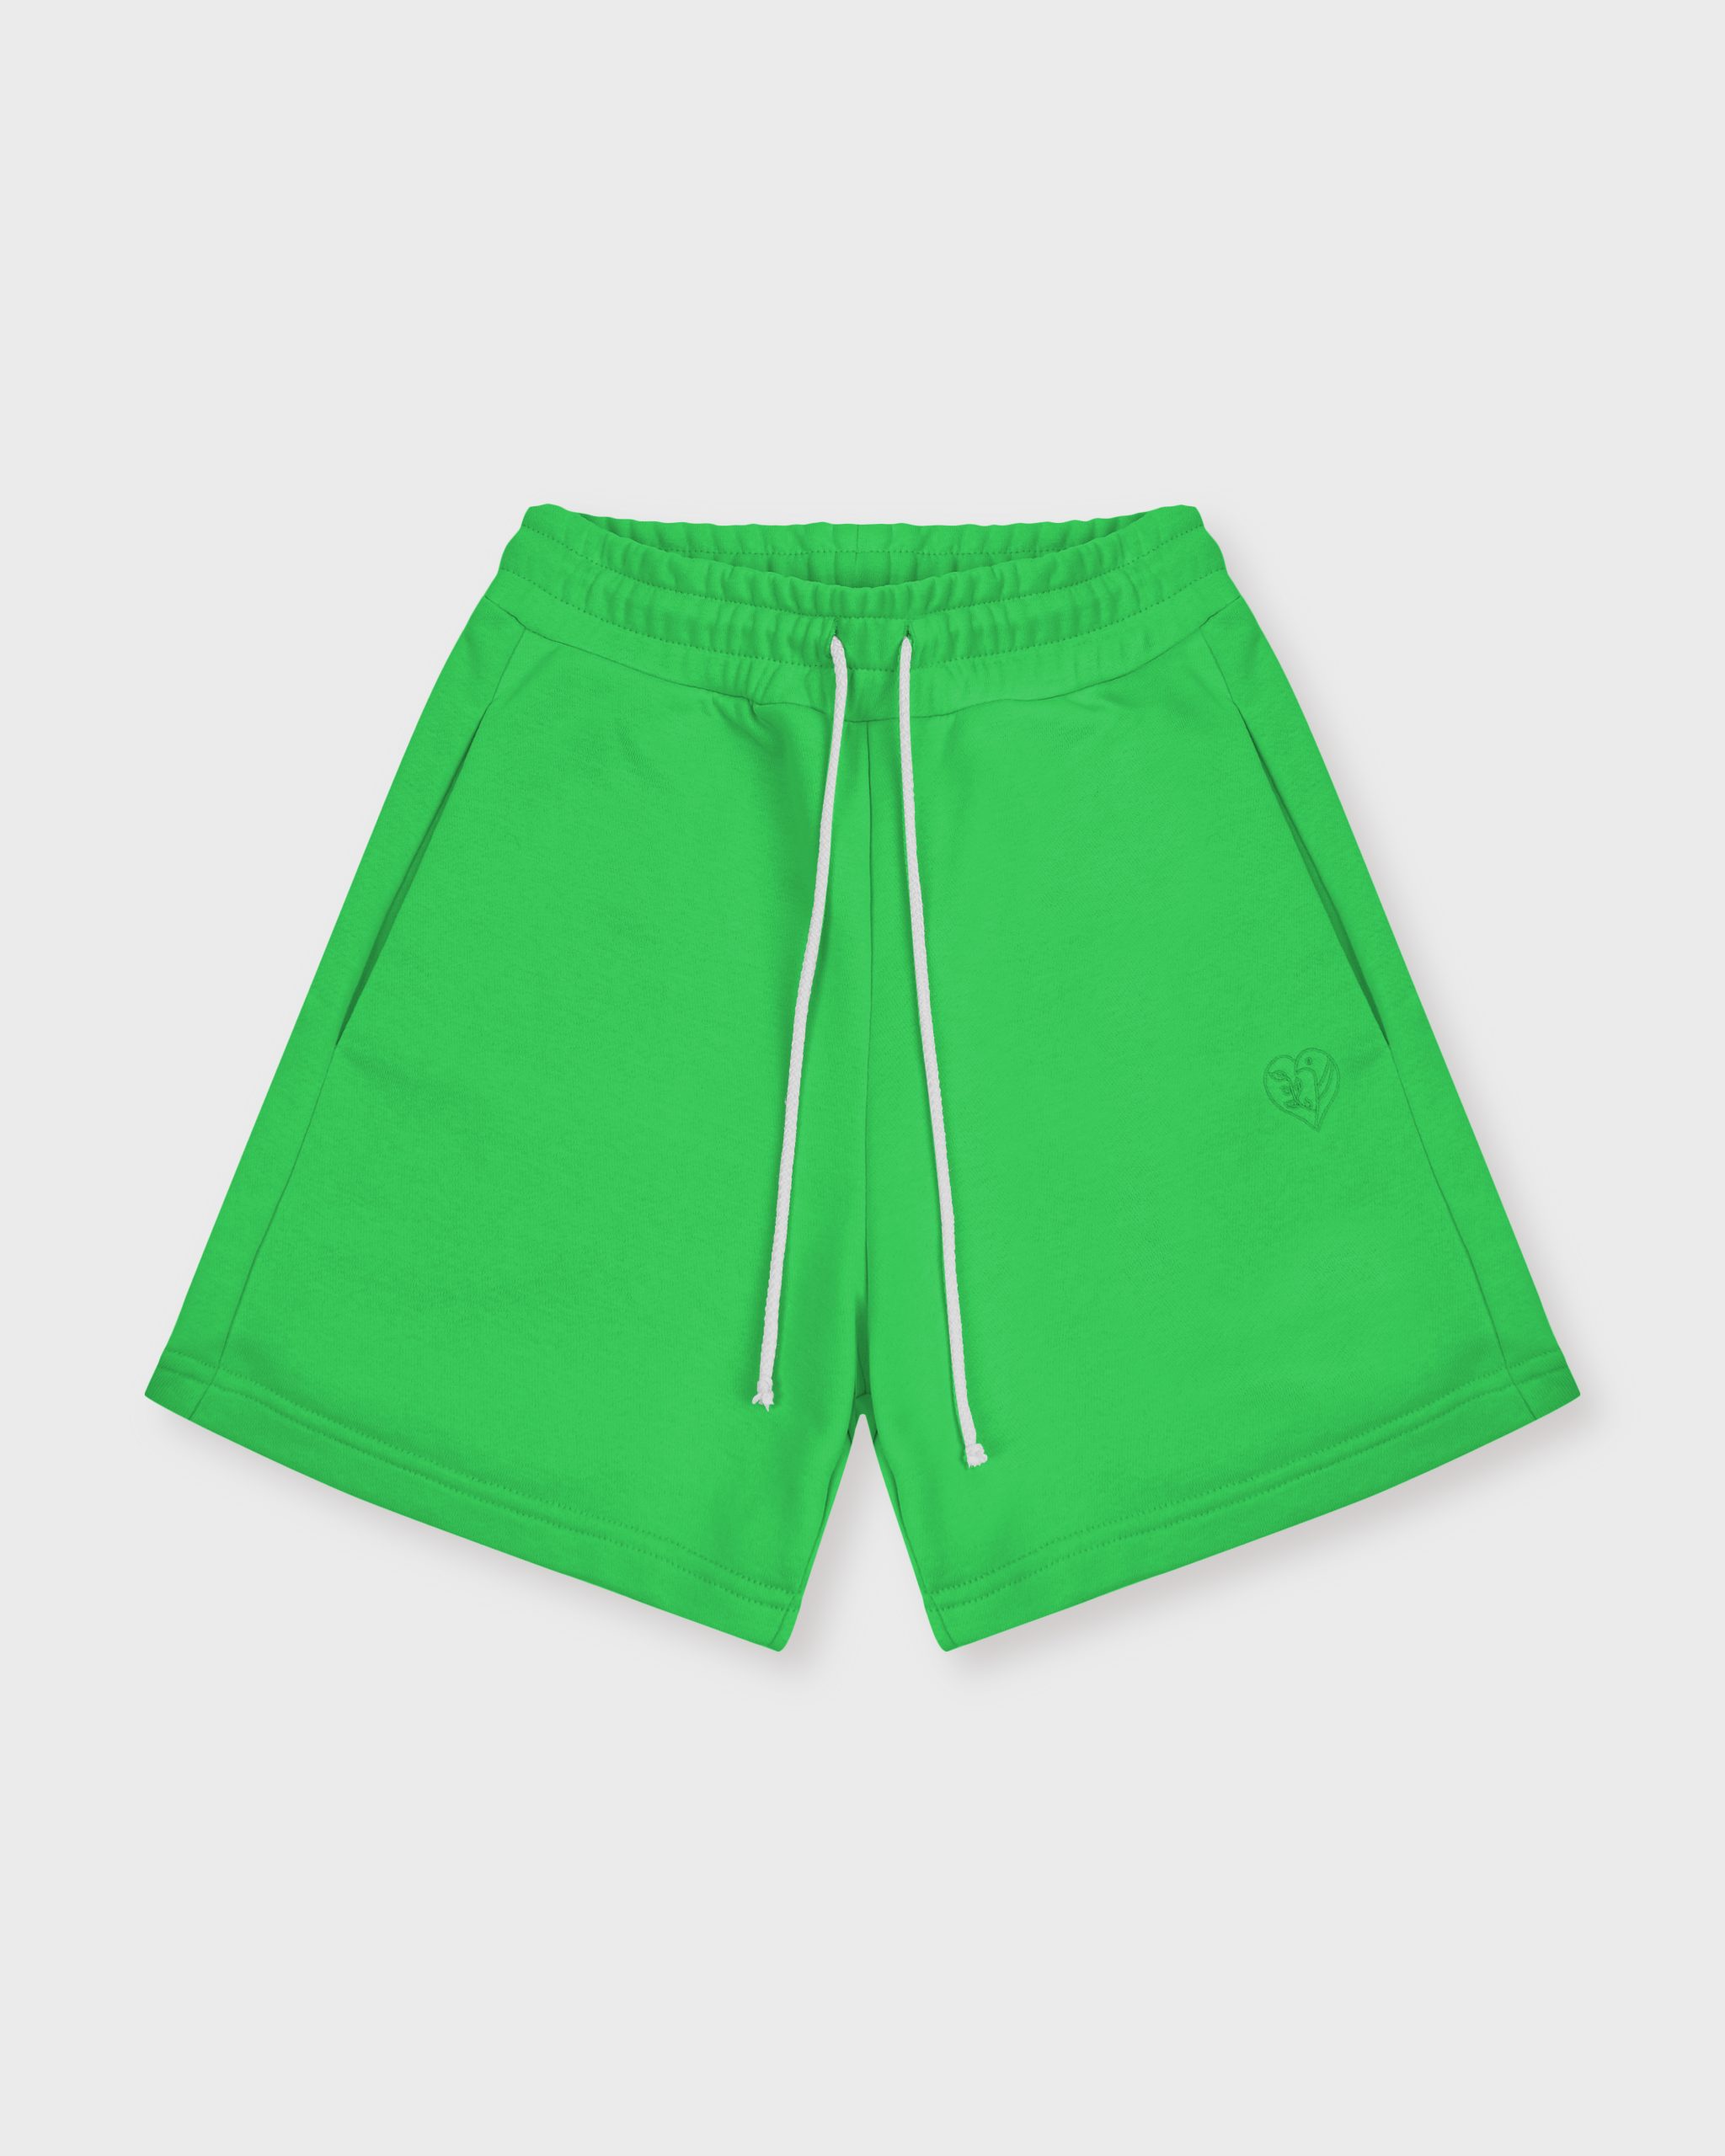 Повседневные шорты женские Atmosphere Summer vibes зеленые S